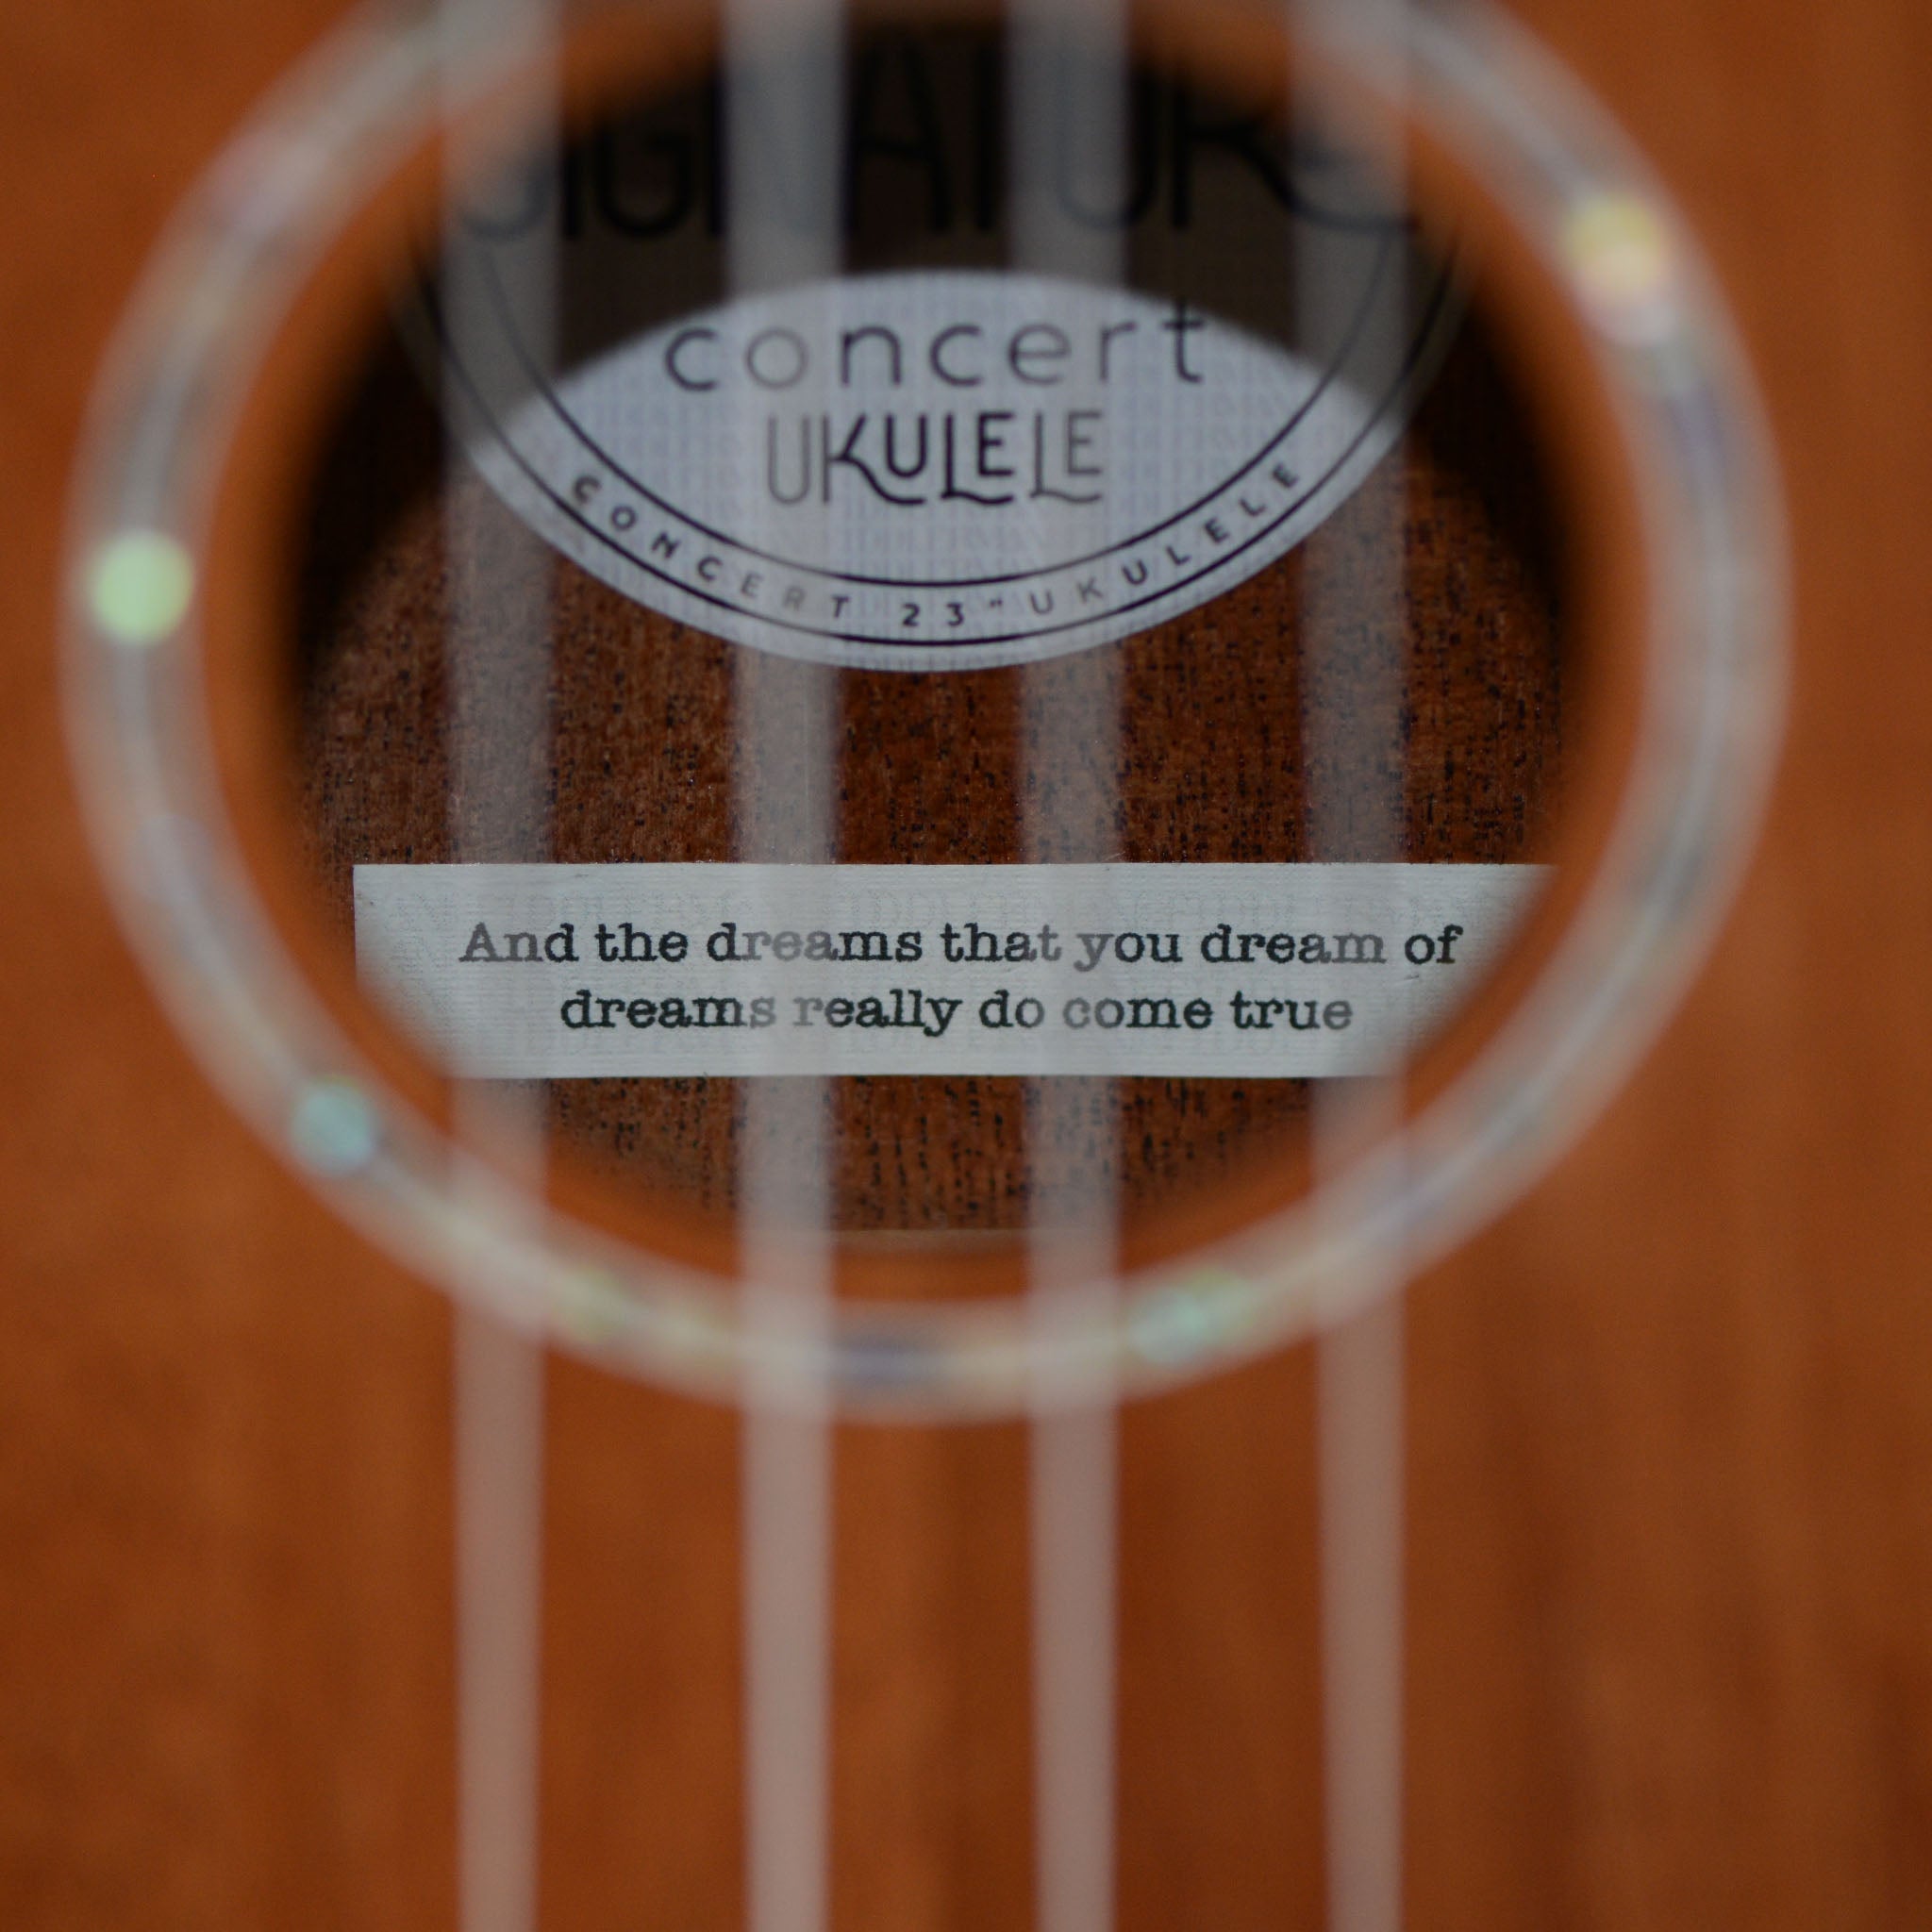 Personalized label inside the ukulele